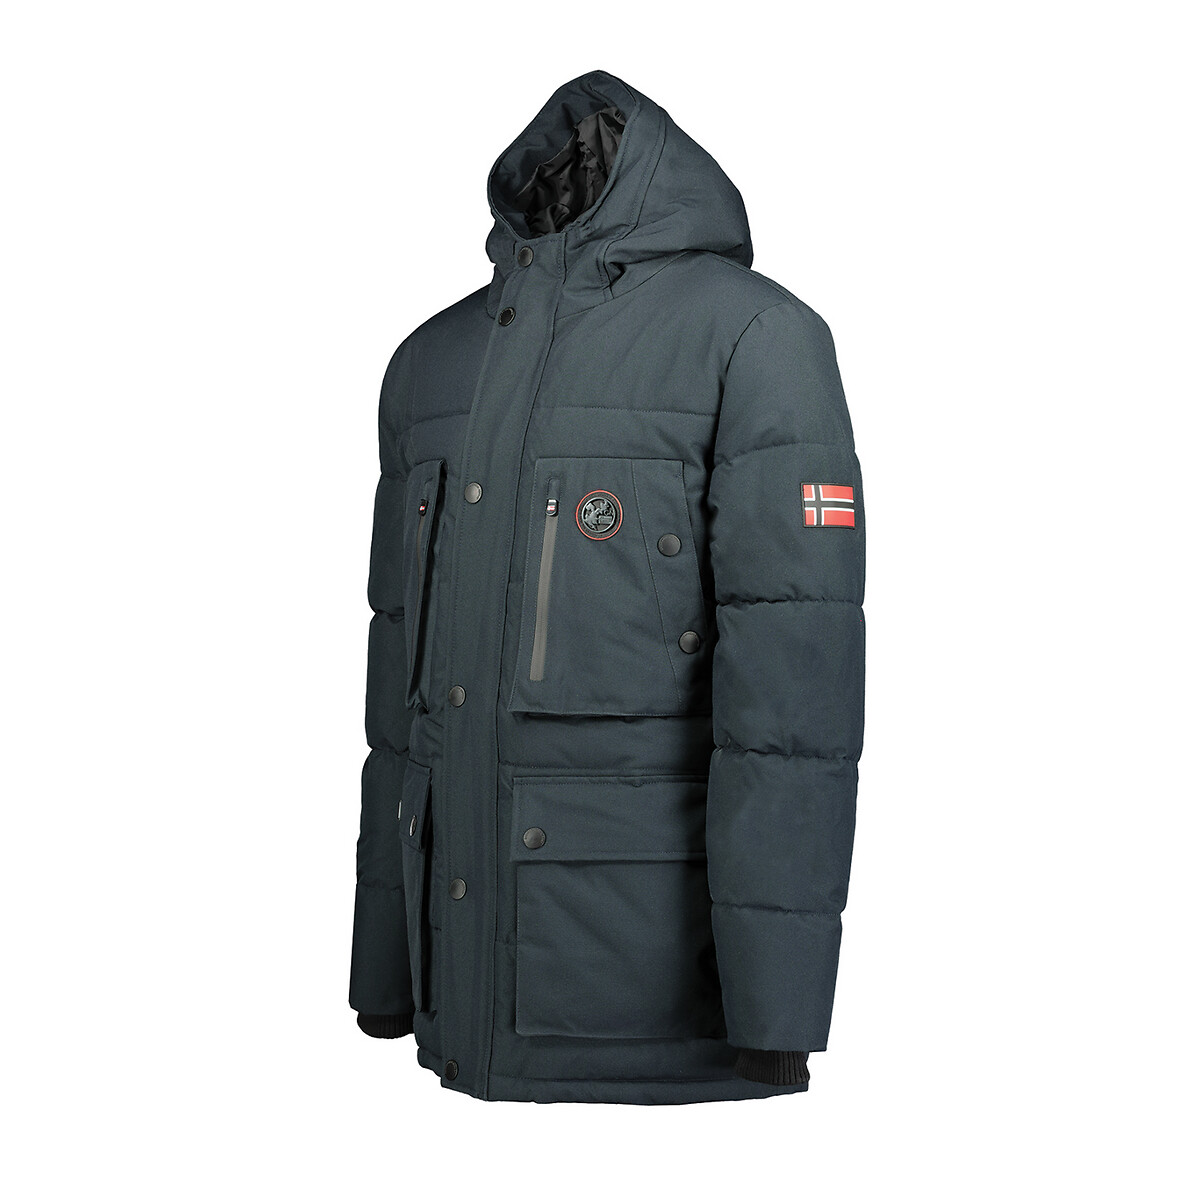 Geographical Norway Warm Men's Winter Jacket Fvsa Outdoor Parka Coat Hood